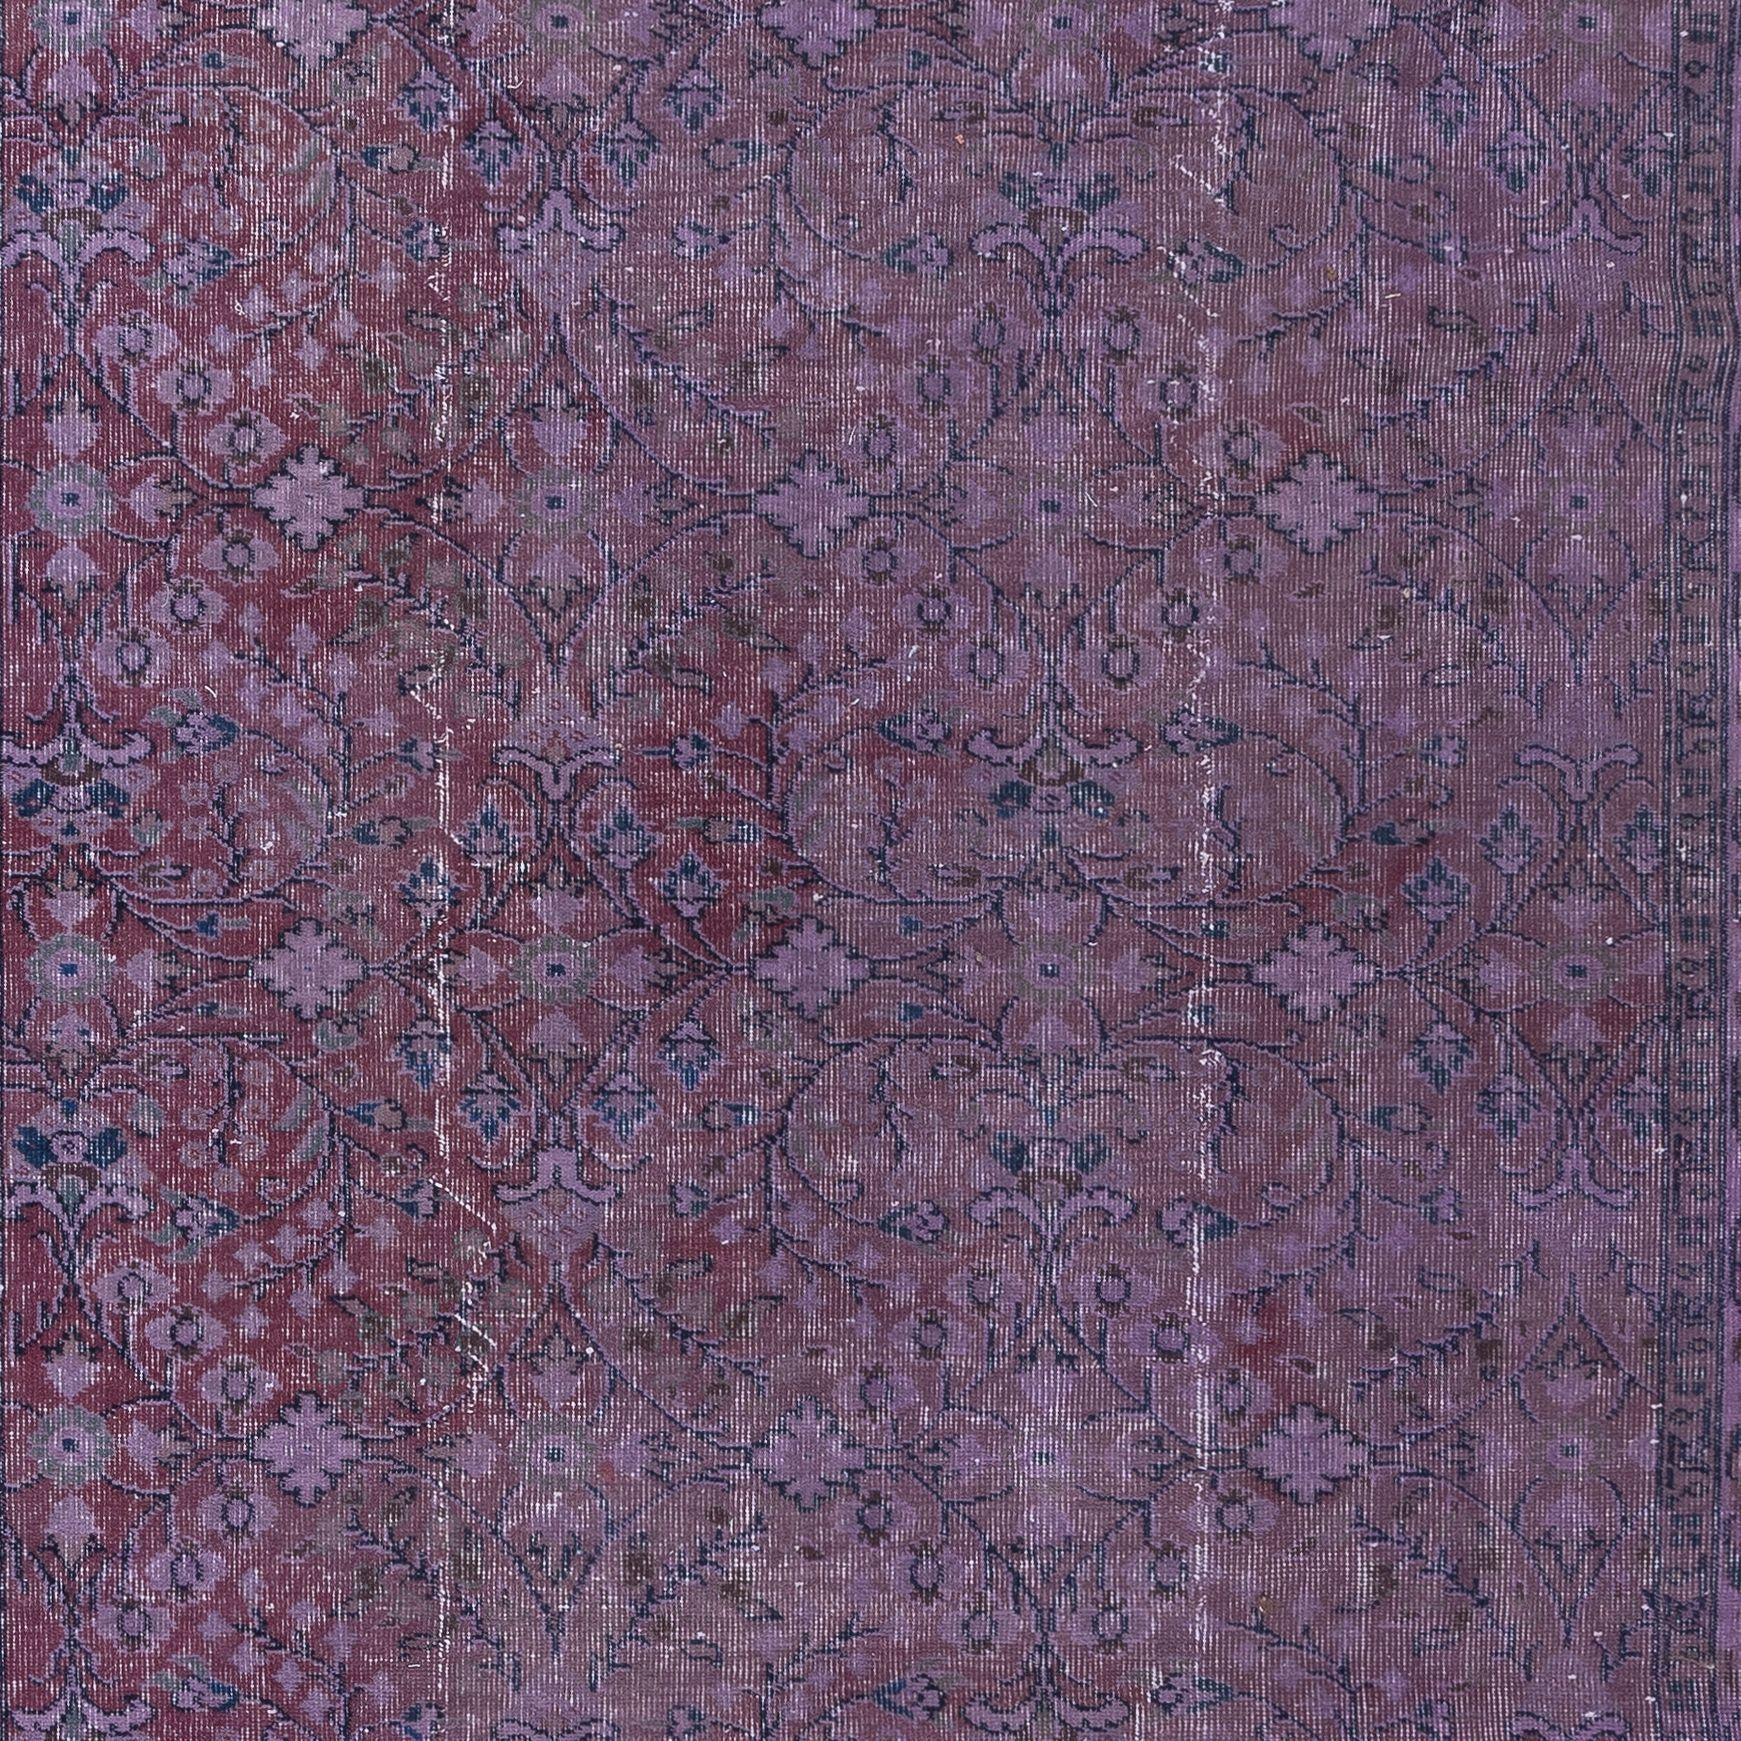 6.3x9.5 Ft Floral gemusterten handgefertigten türkischen Bereich Teppich in Mulberry lila Töne (Moderne)